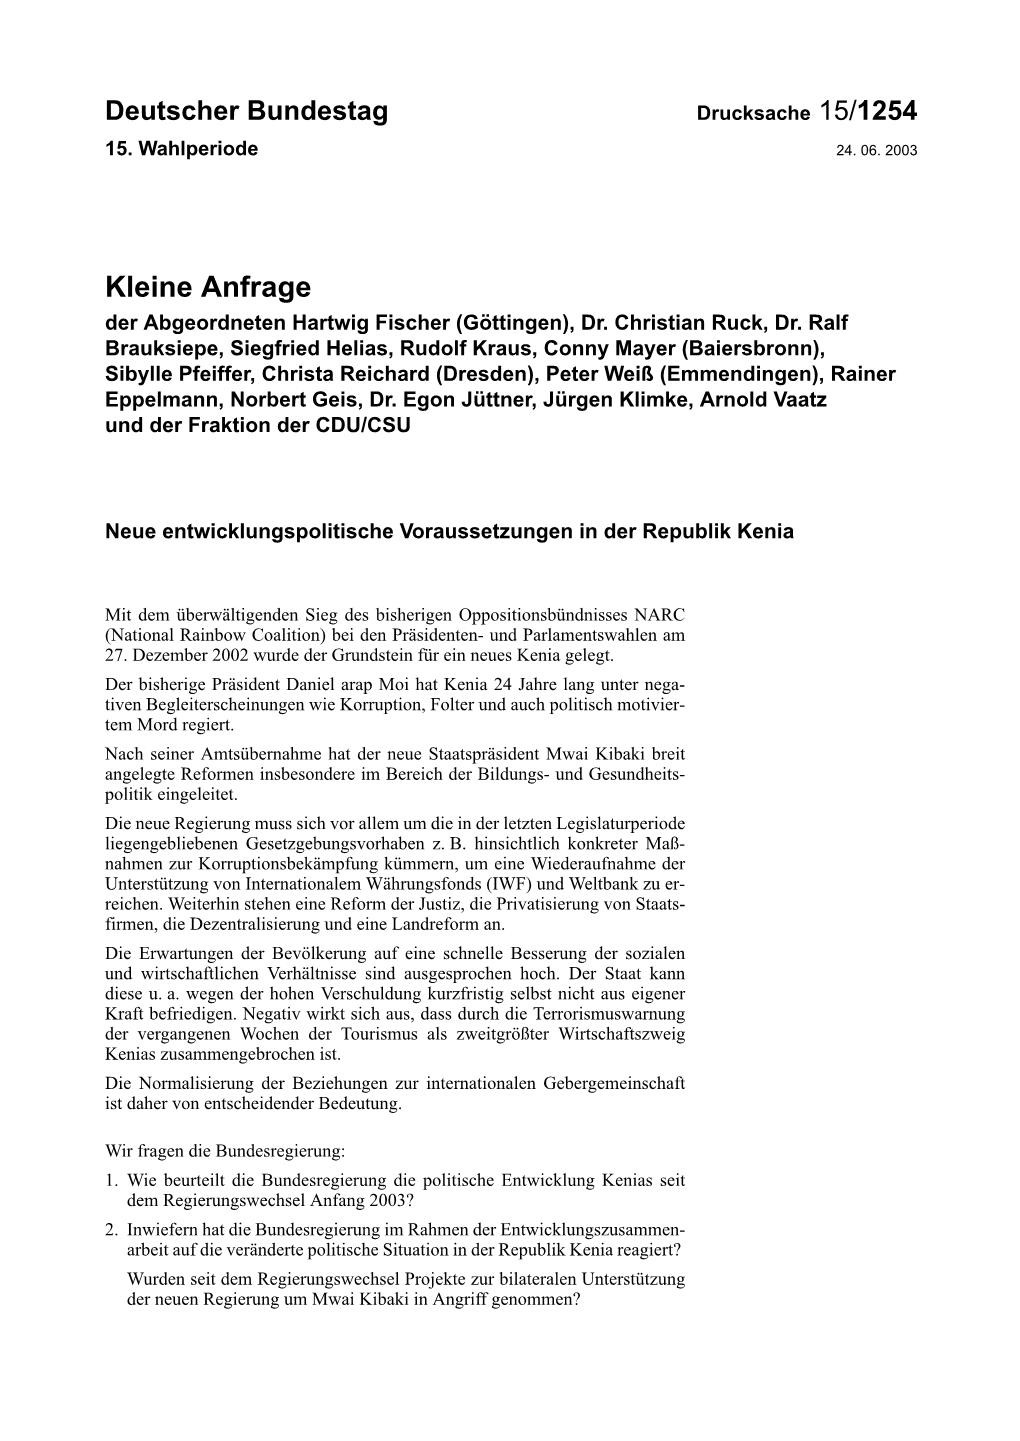 Kleine Anfrage Der Abgeordneten Hartwig Fischer (Göttingen), Dr